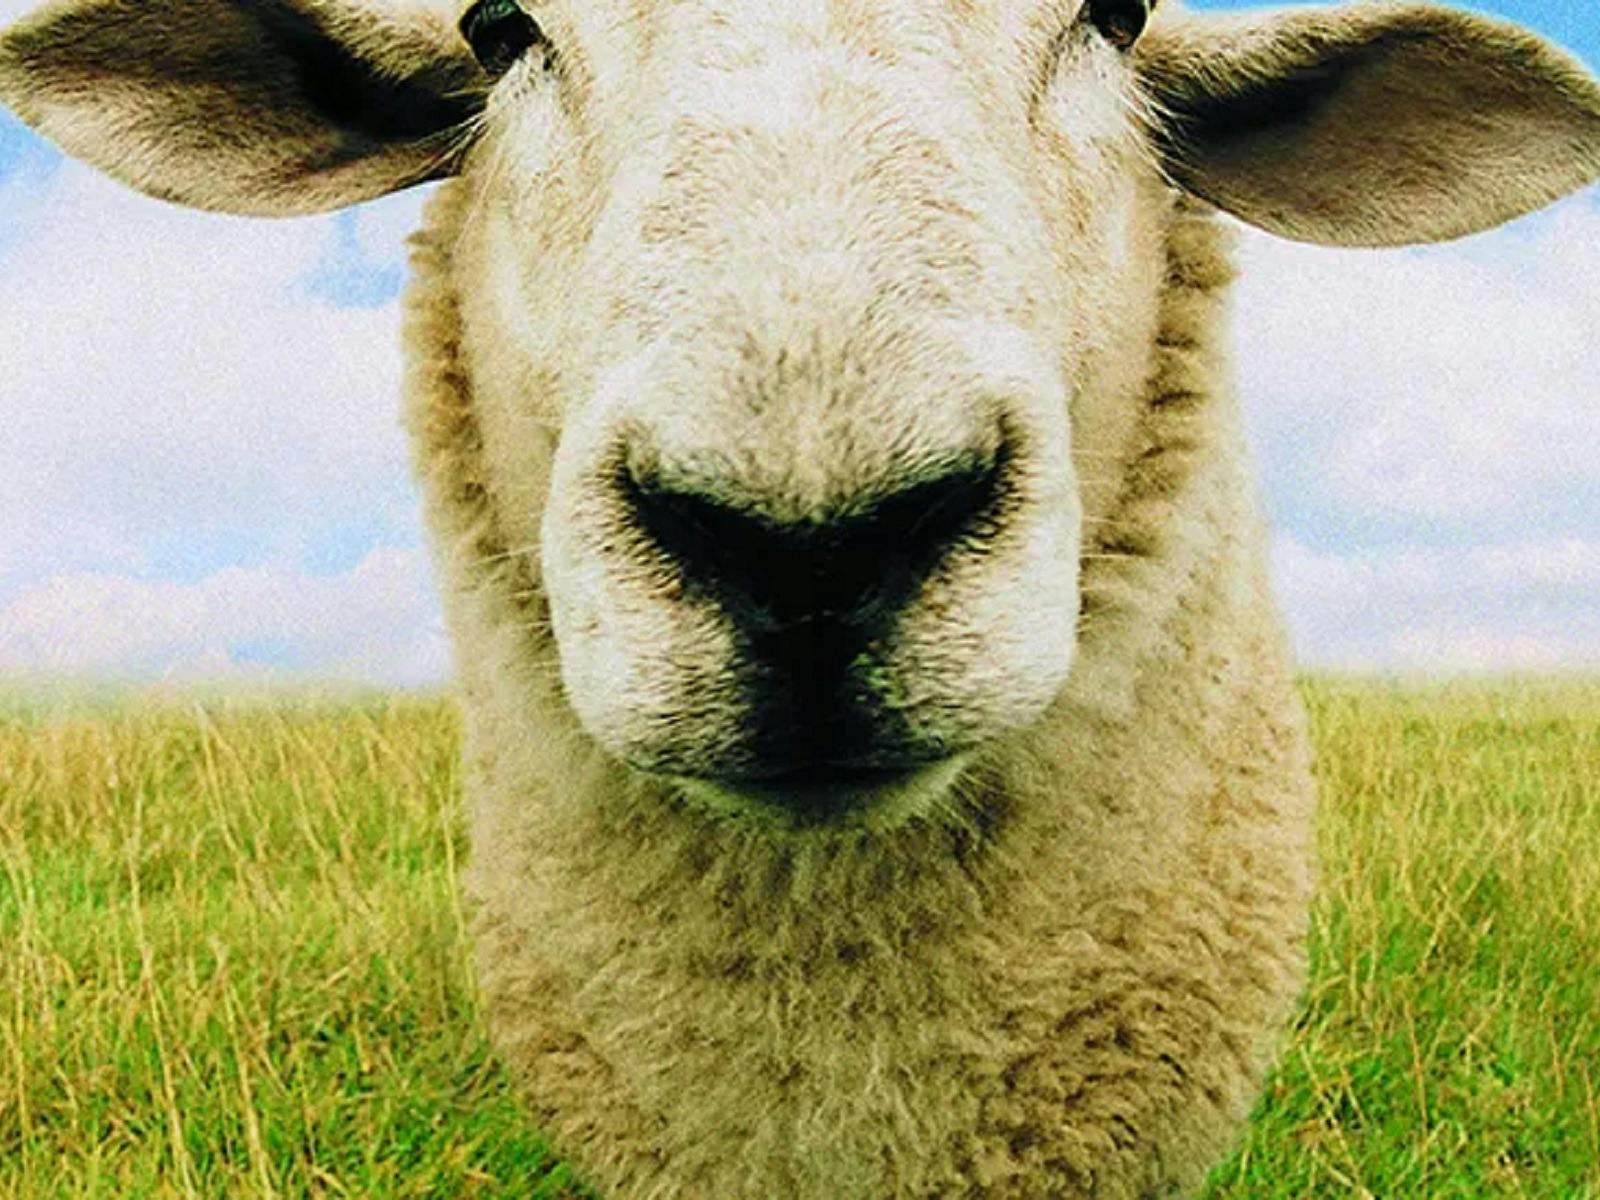 Sheep Shears Charm, Farming